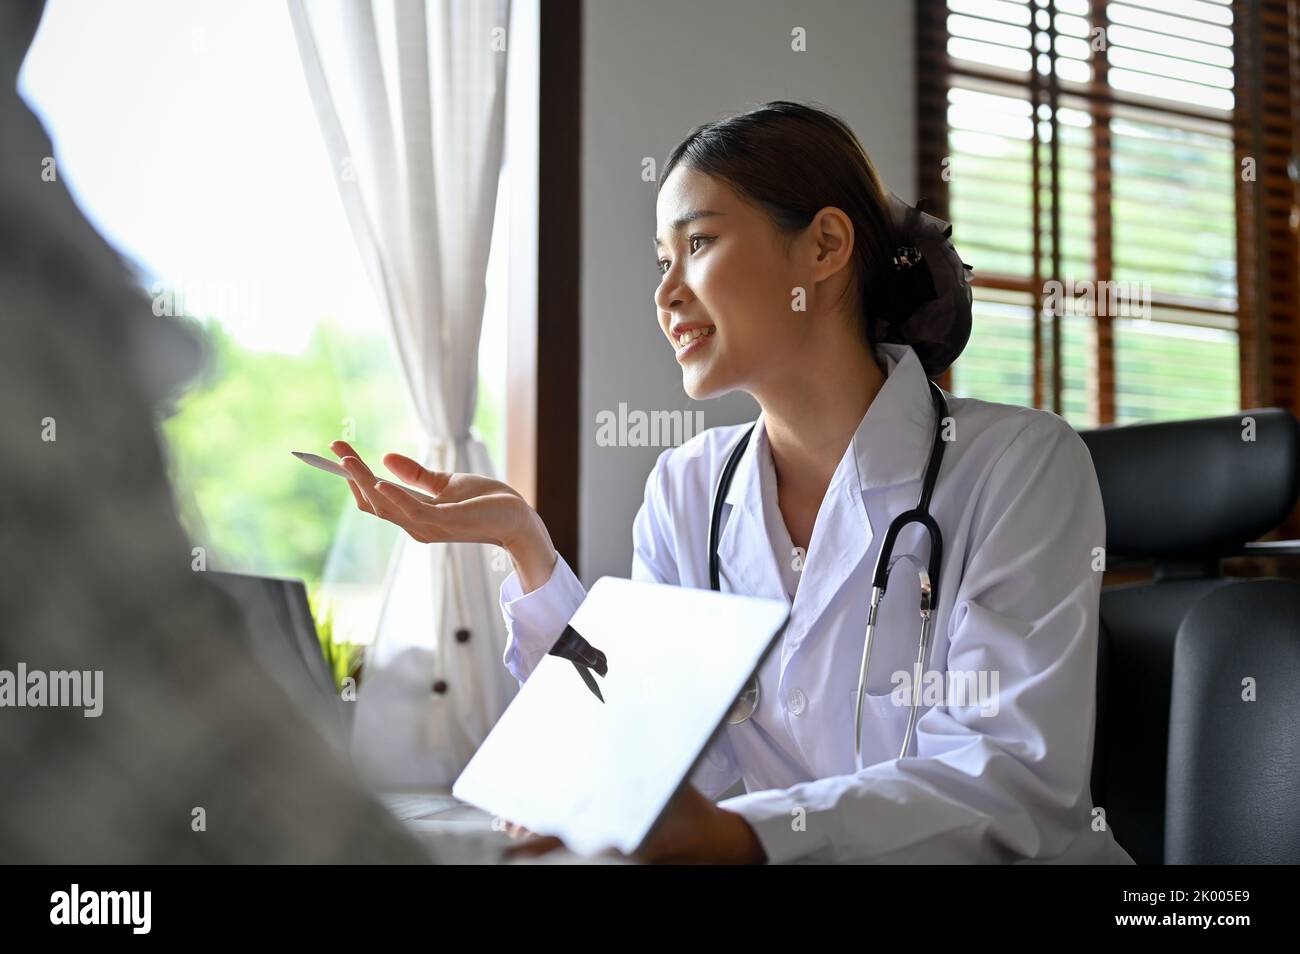 Die attraktive und kompetente asiatische Ärztin trifft sich mit ihrer Patientin im Büro und gibt ihrem Patienten medizinische und chirurgische Ratschläge. Stockfoto